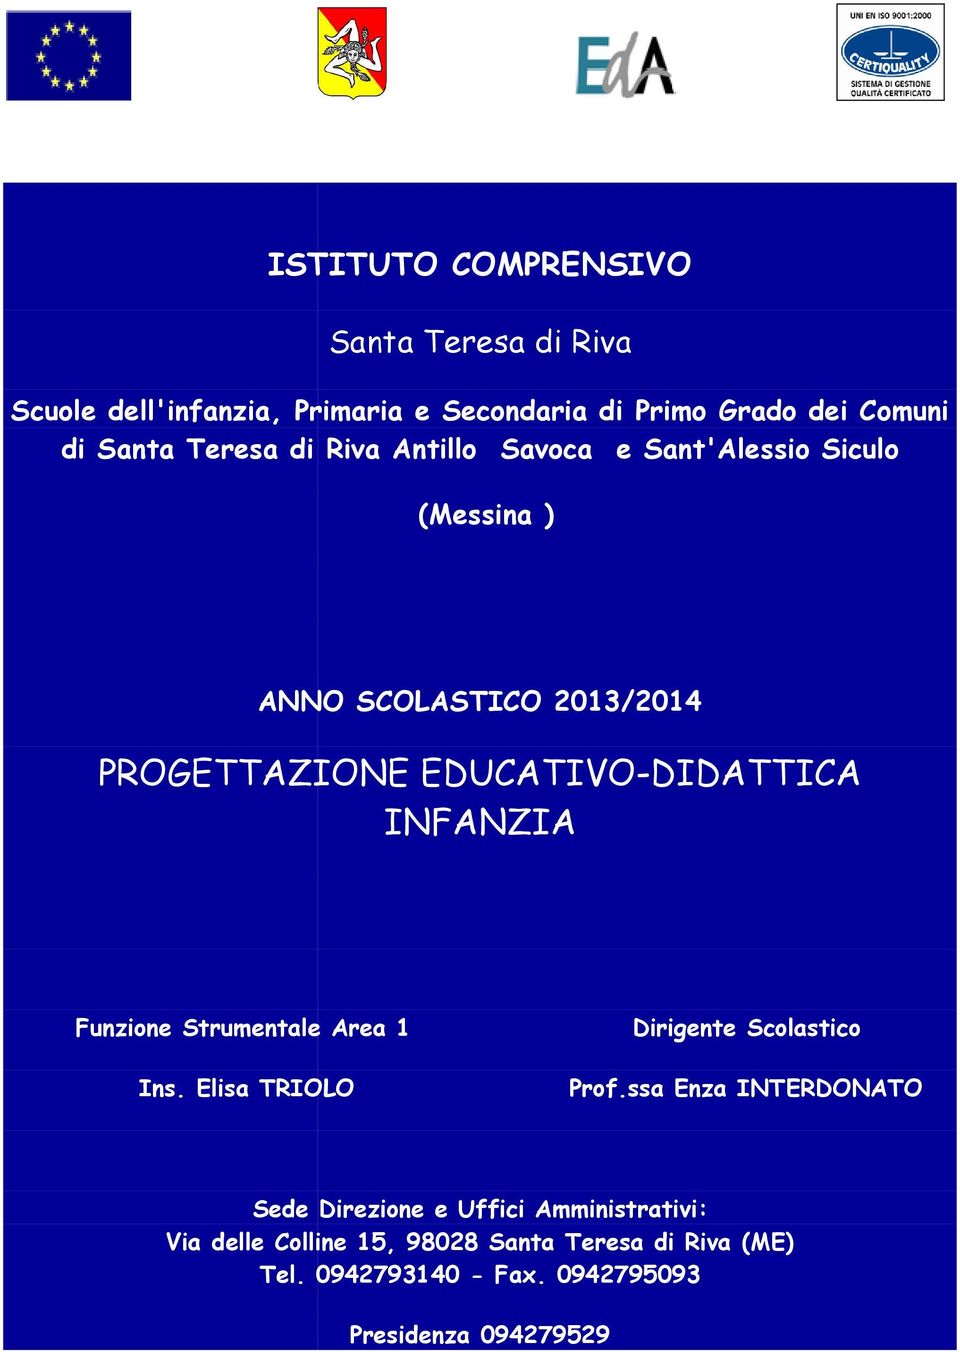 DIDATTICA INFANZIA Funzione Strumentale Area 1 Ins. Elisa TRIOLO Dirigente Scolastico Prof.